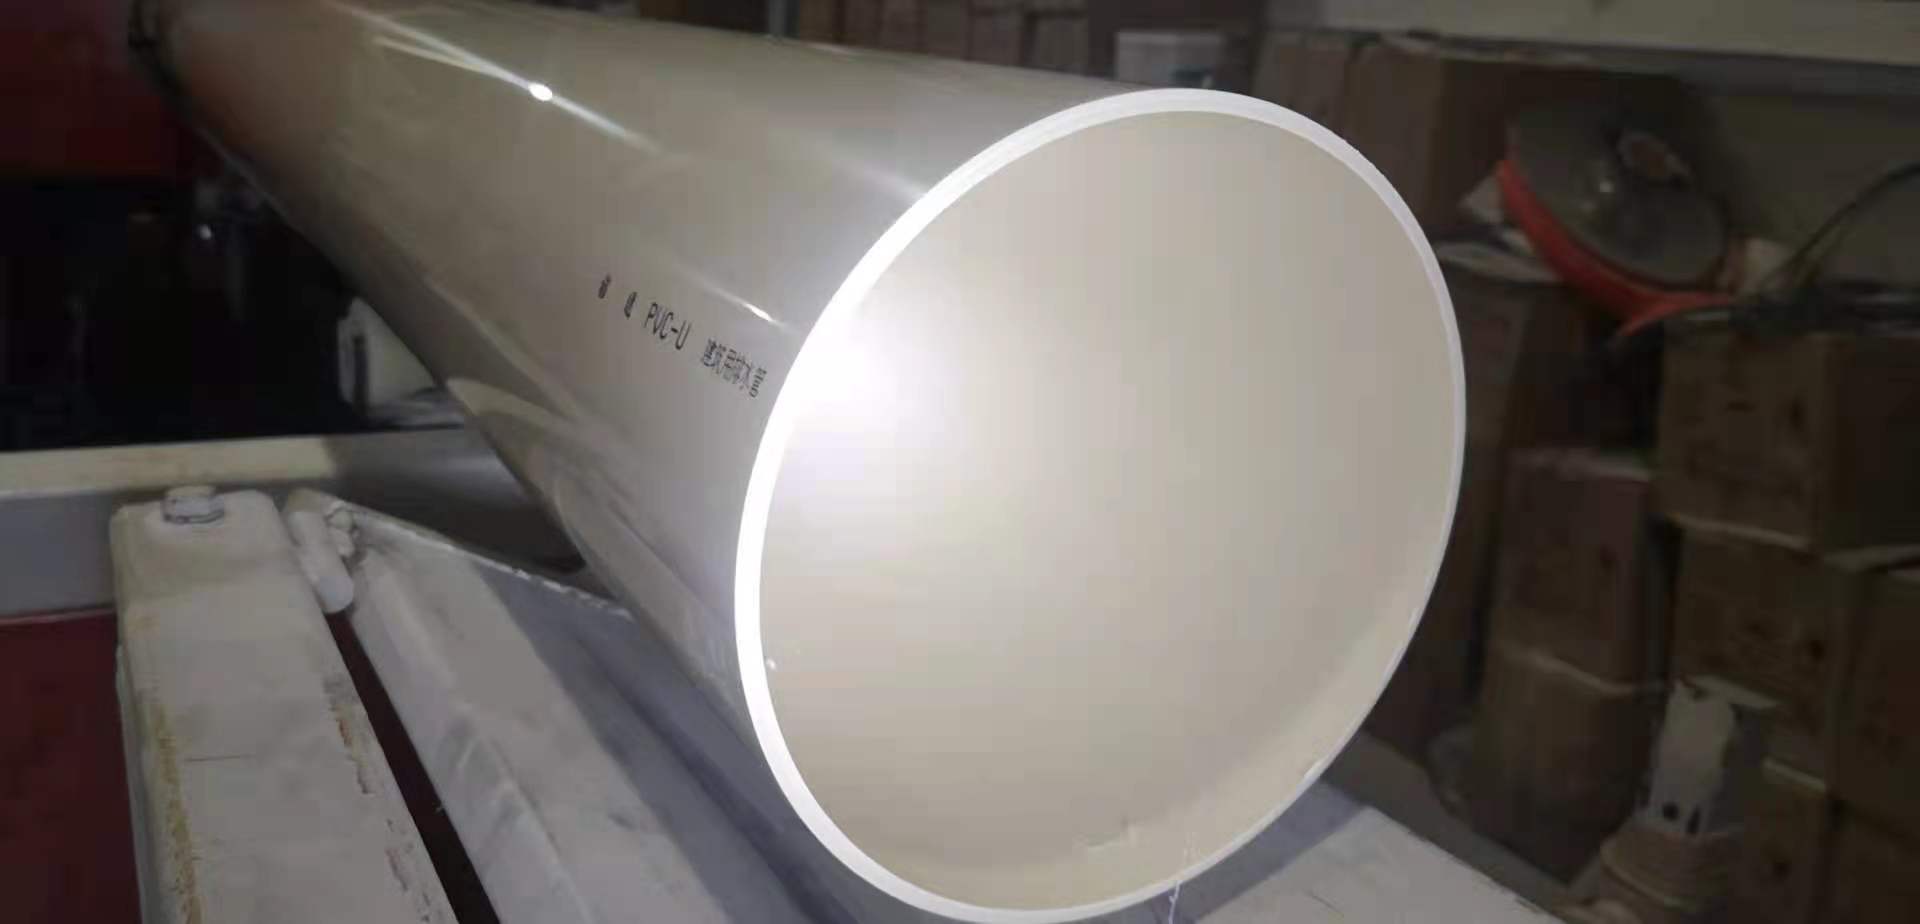 无锡PVC-U排水管 